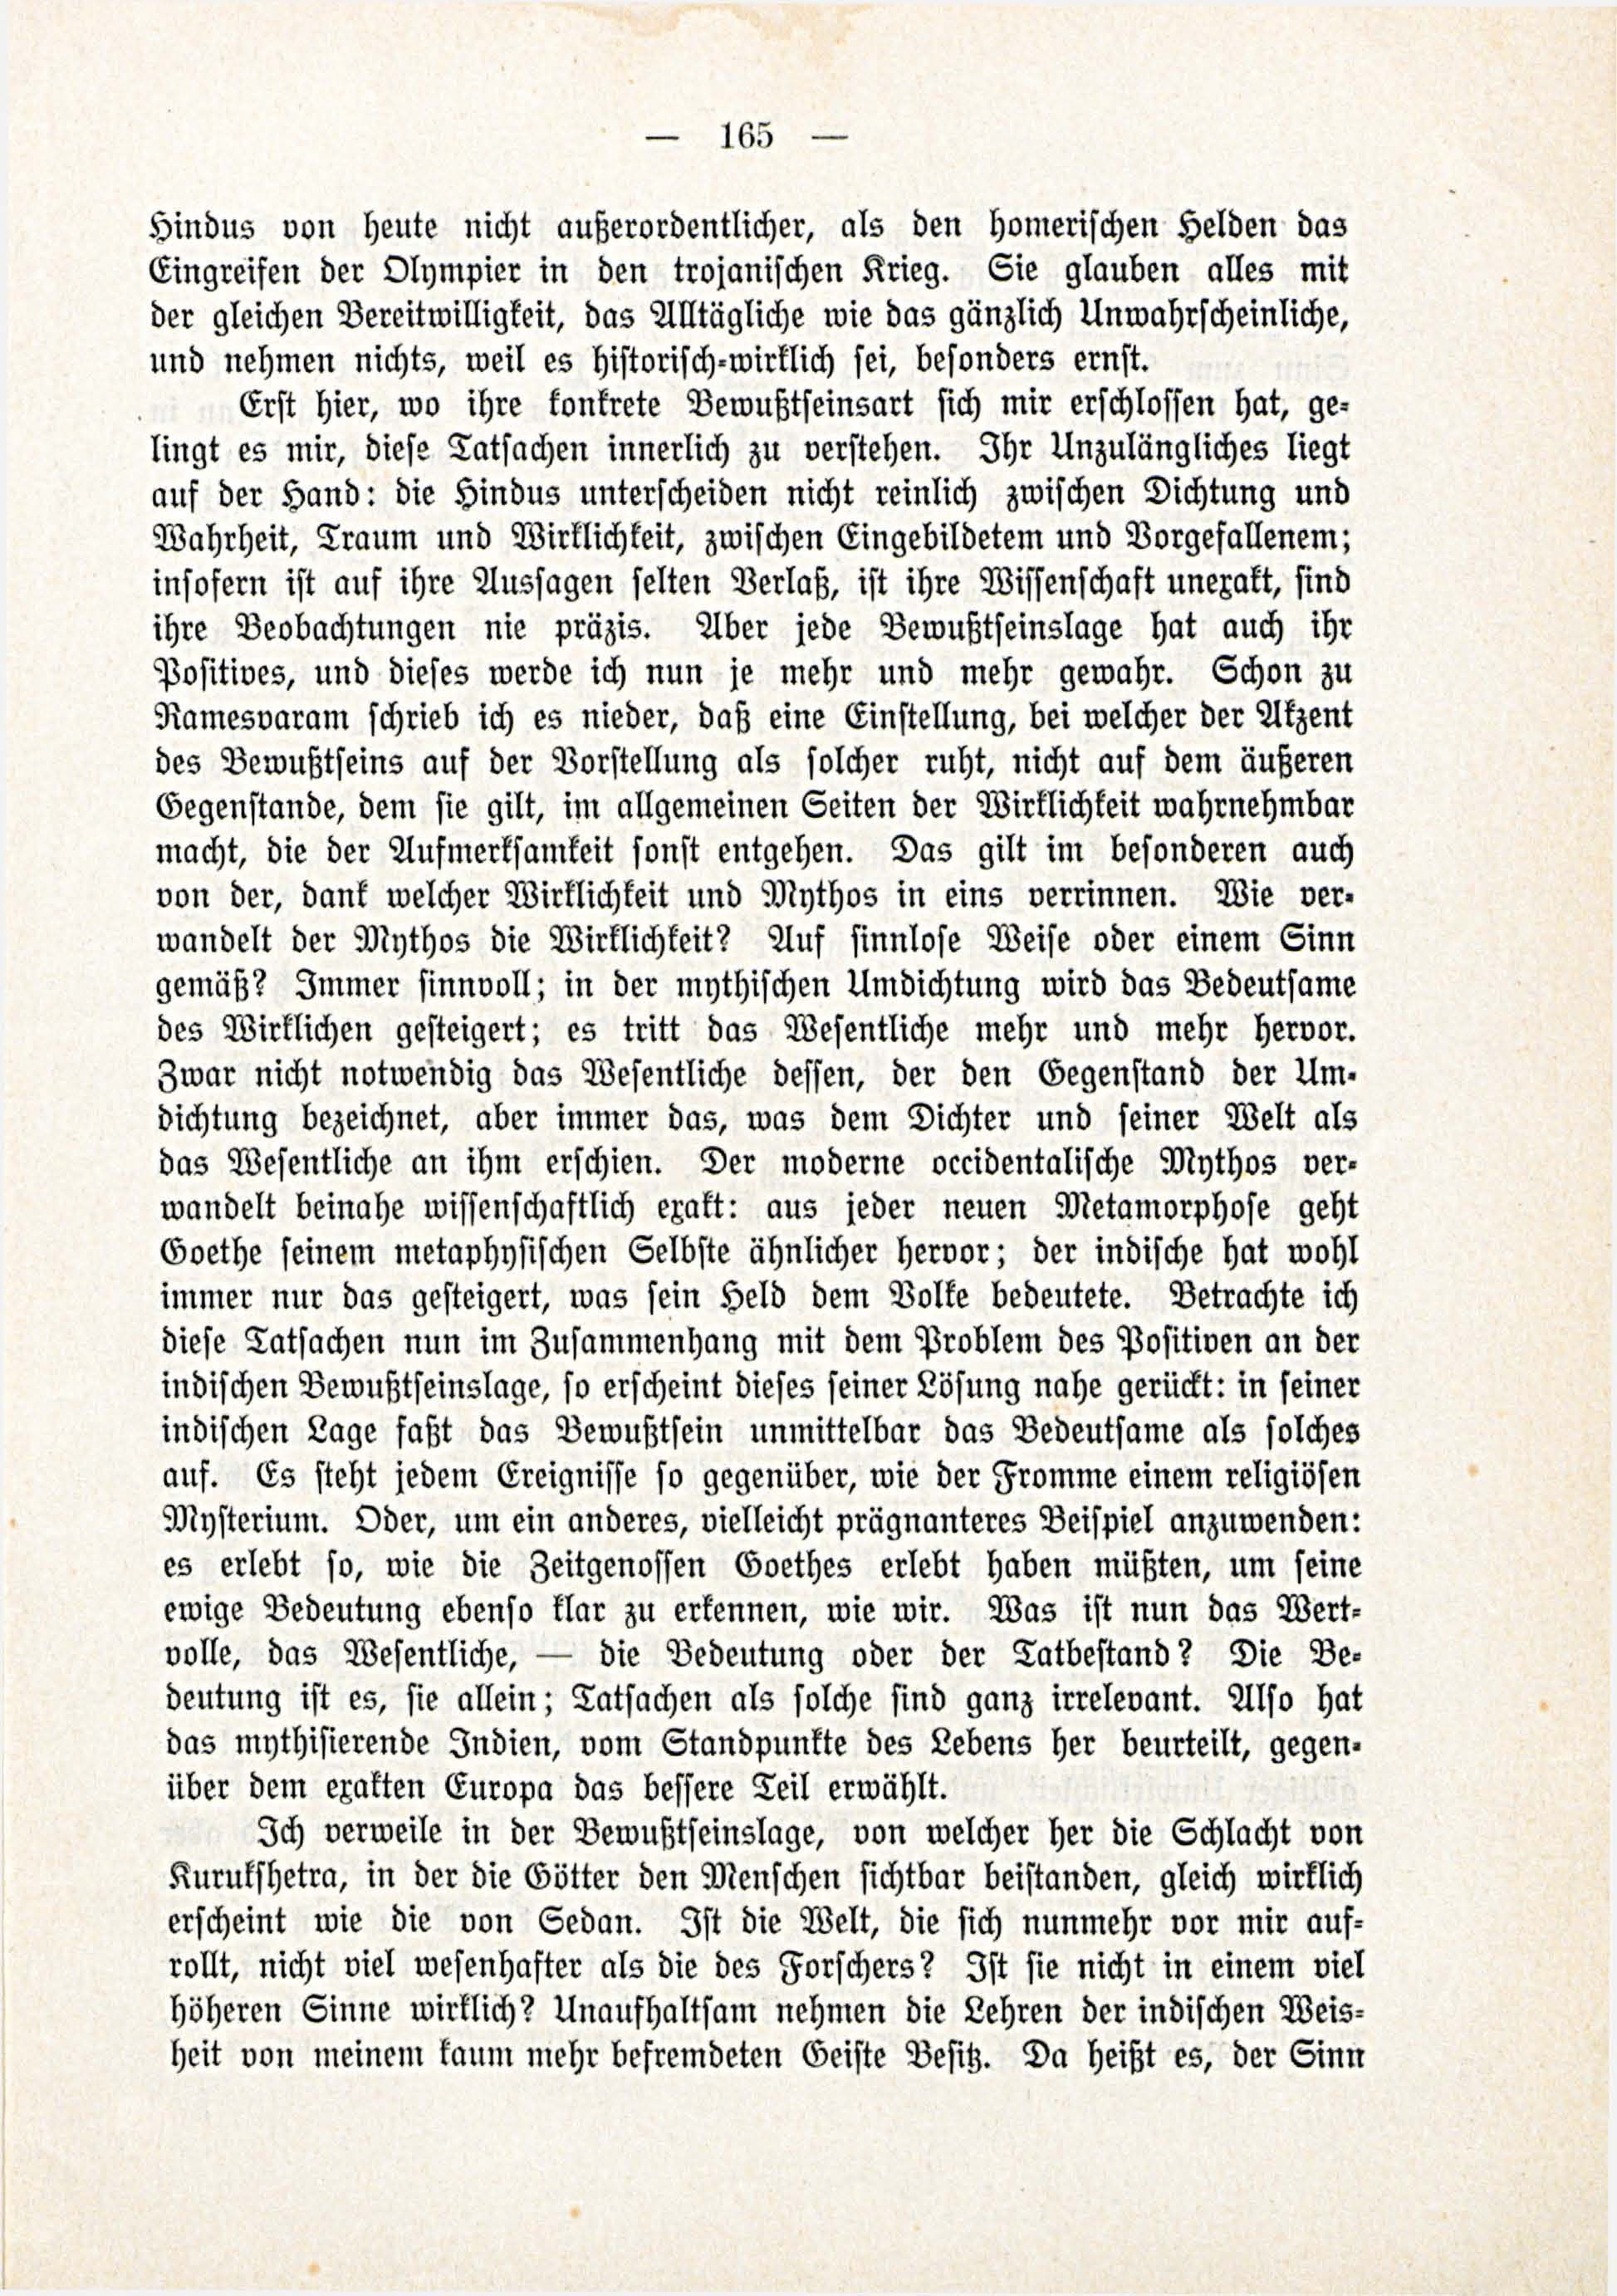 Deutsche Monatsschrift für Russland [3/03] (1914) | 11. (165) Main body of text